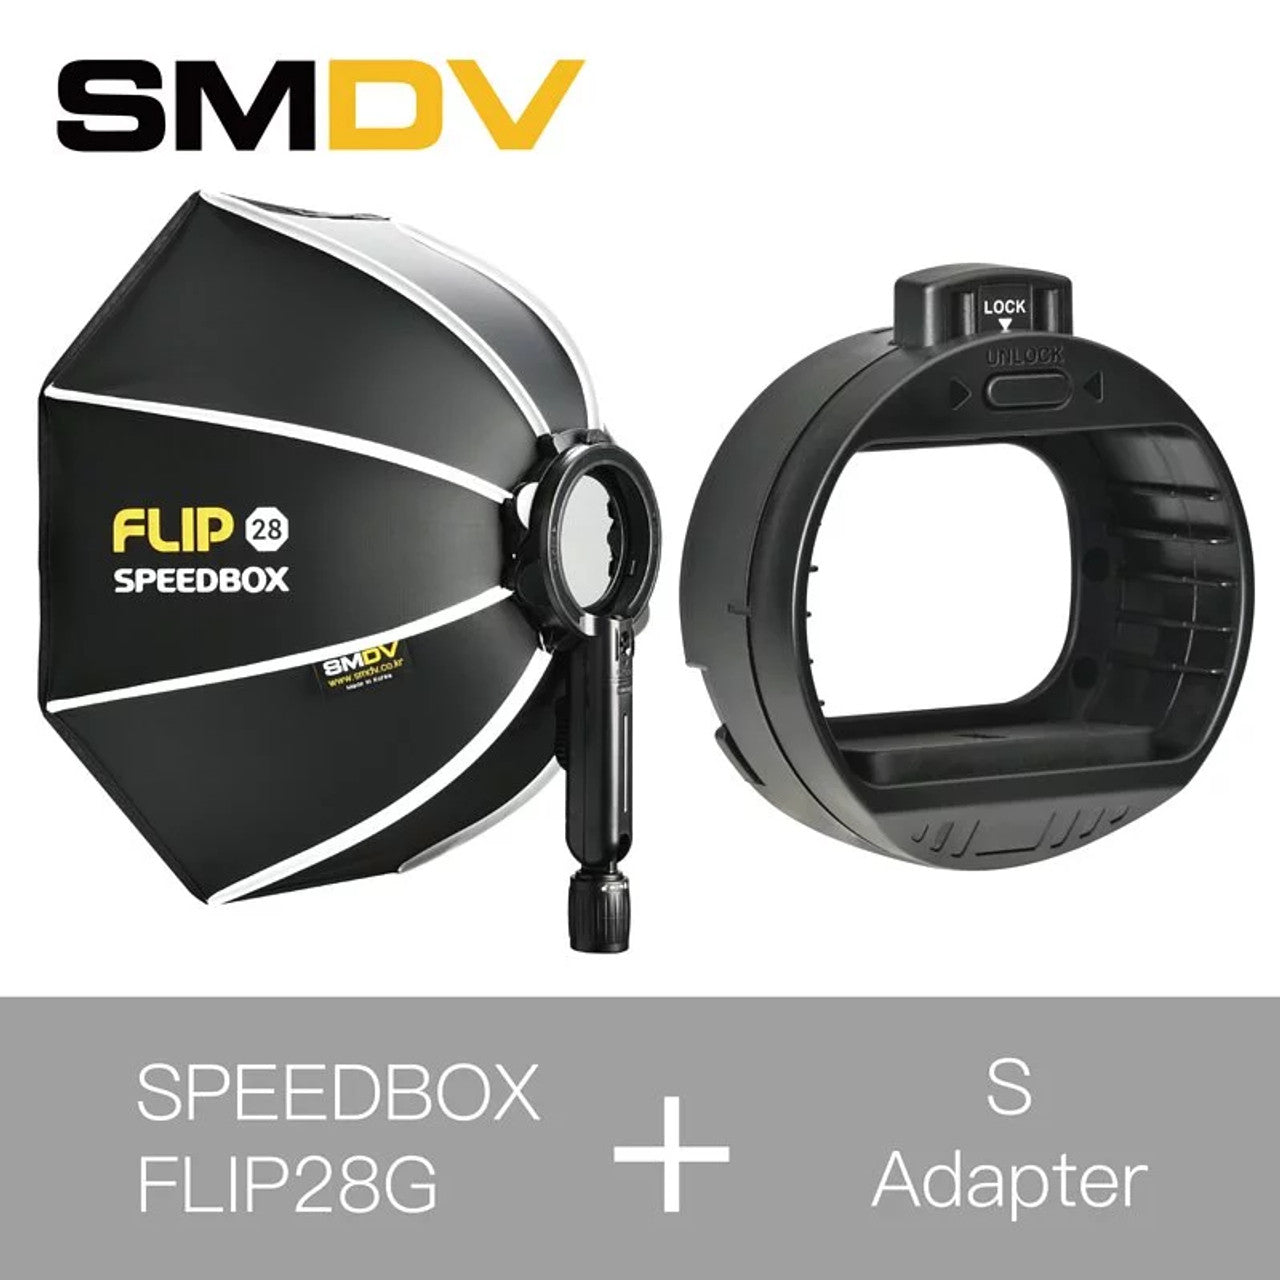 SMDV Speedbox Flip 28 70cm 快開柔光箱連S Adapter